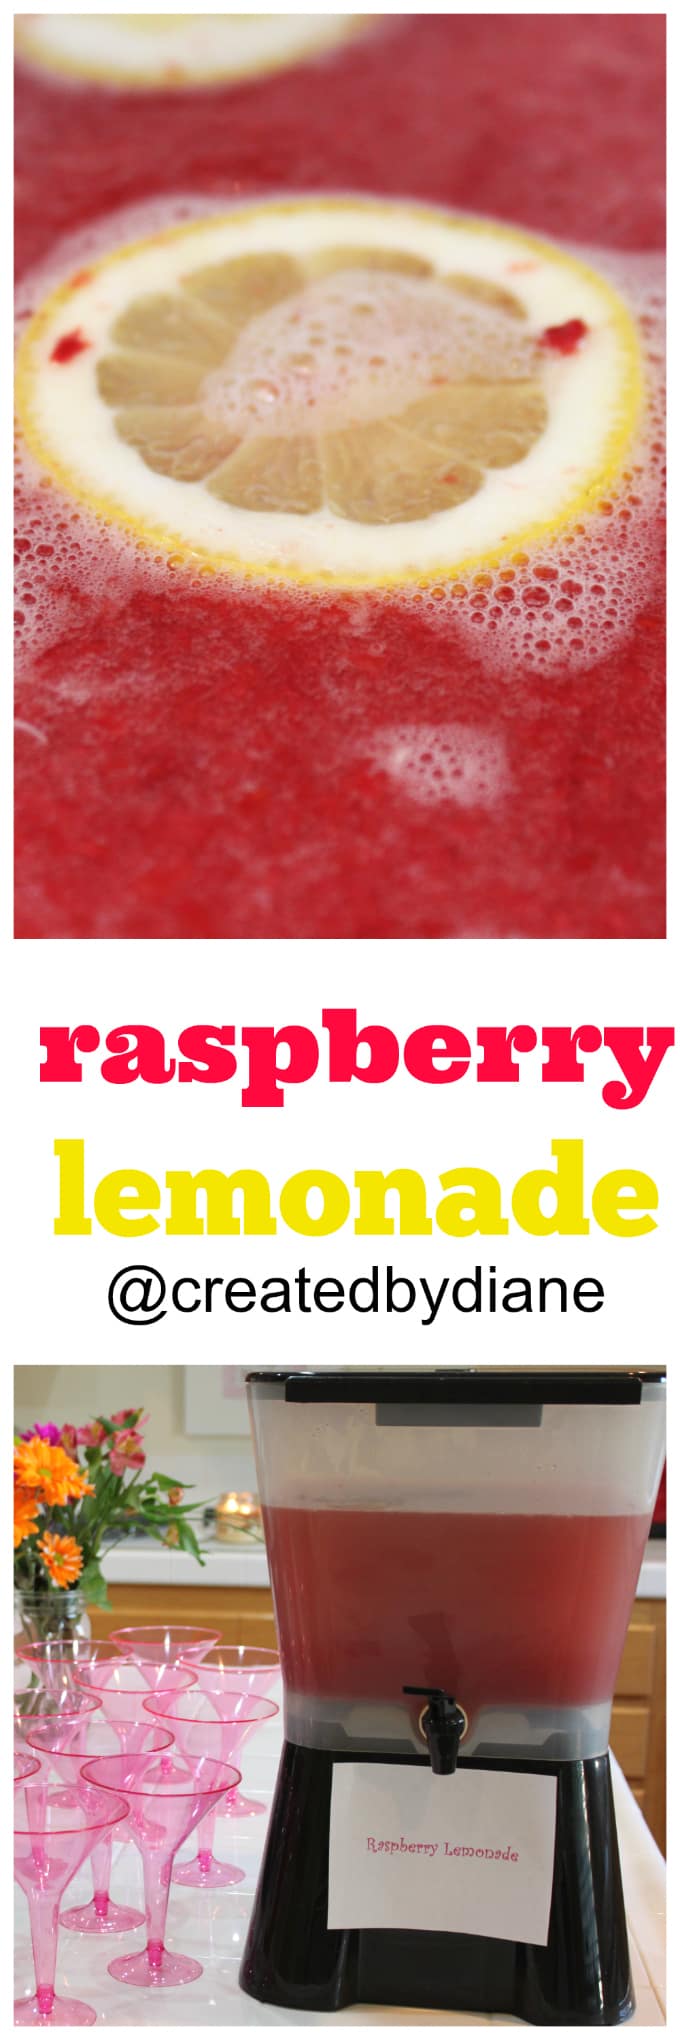 Easy raspberry lemonade